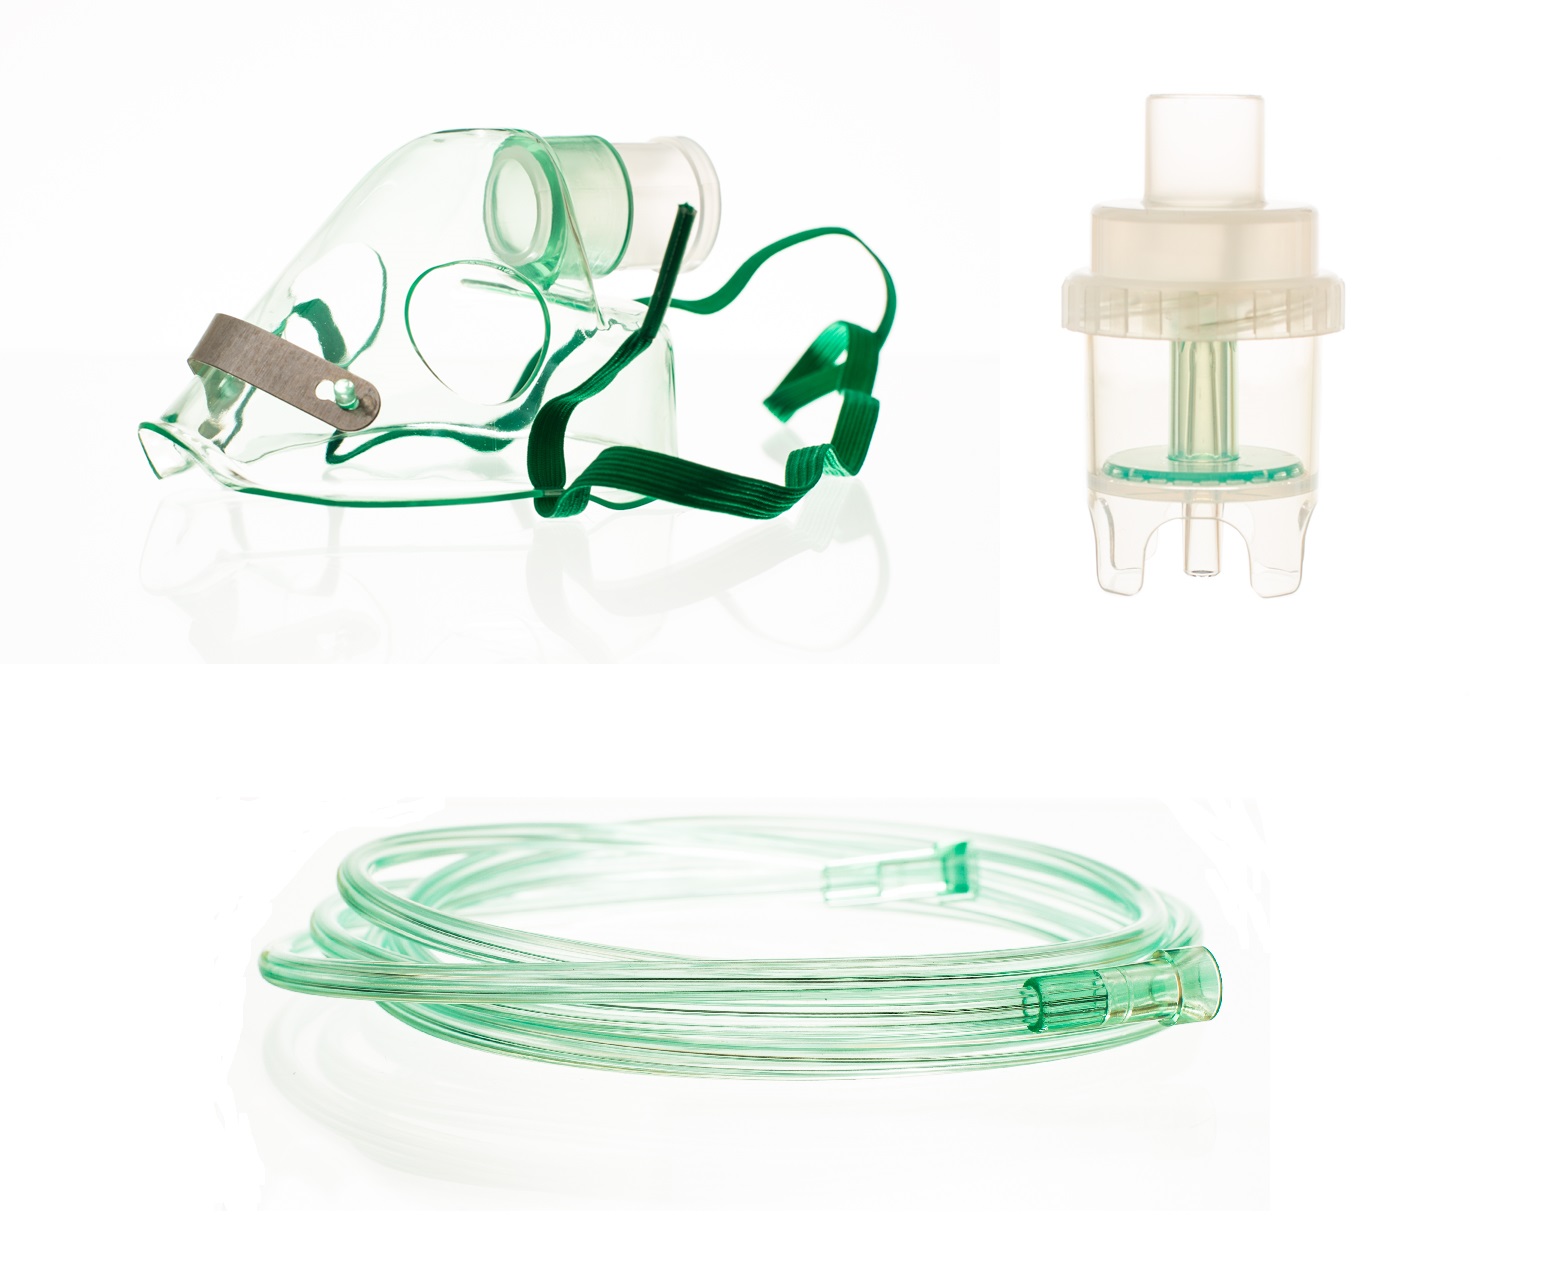 Inhalator Kit: Maska, Nebulizer, šnúra